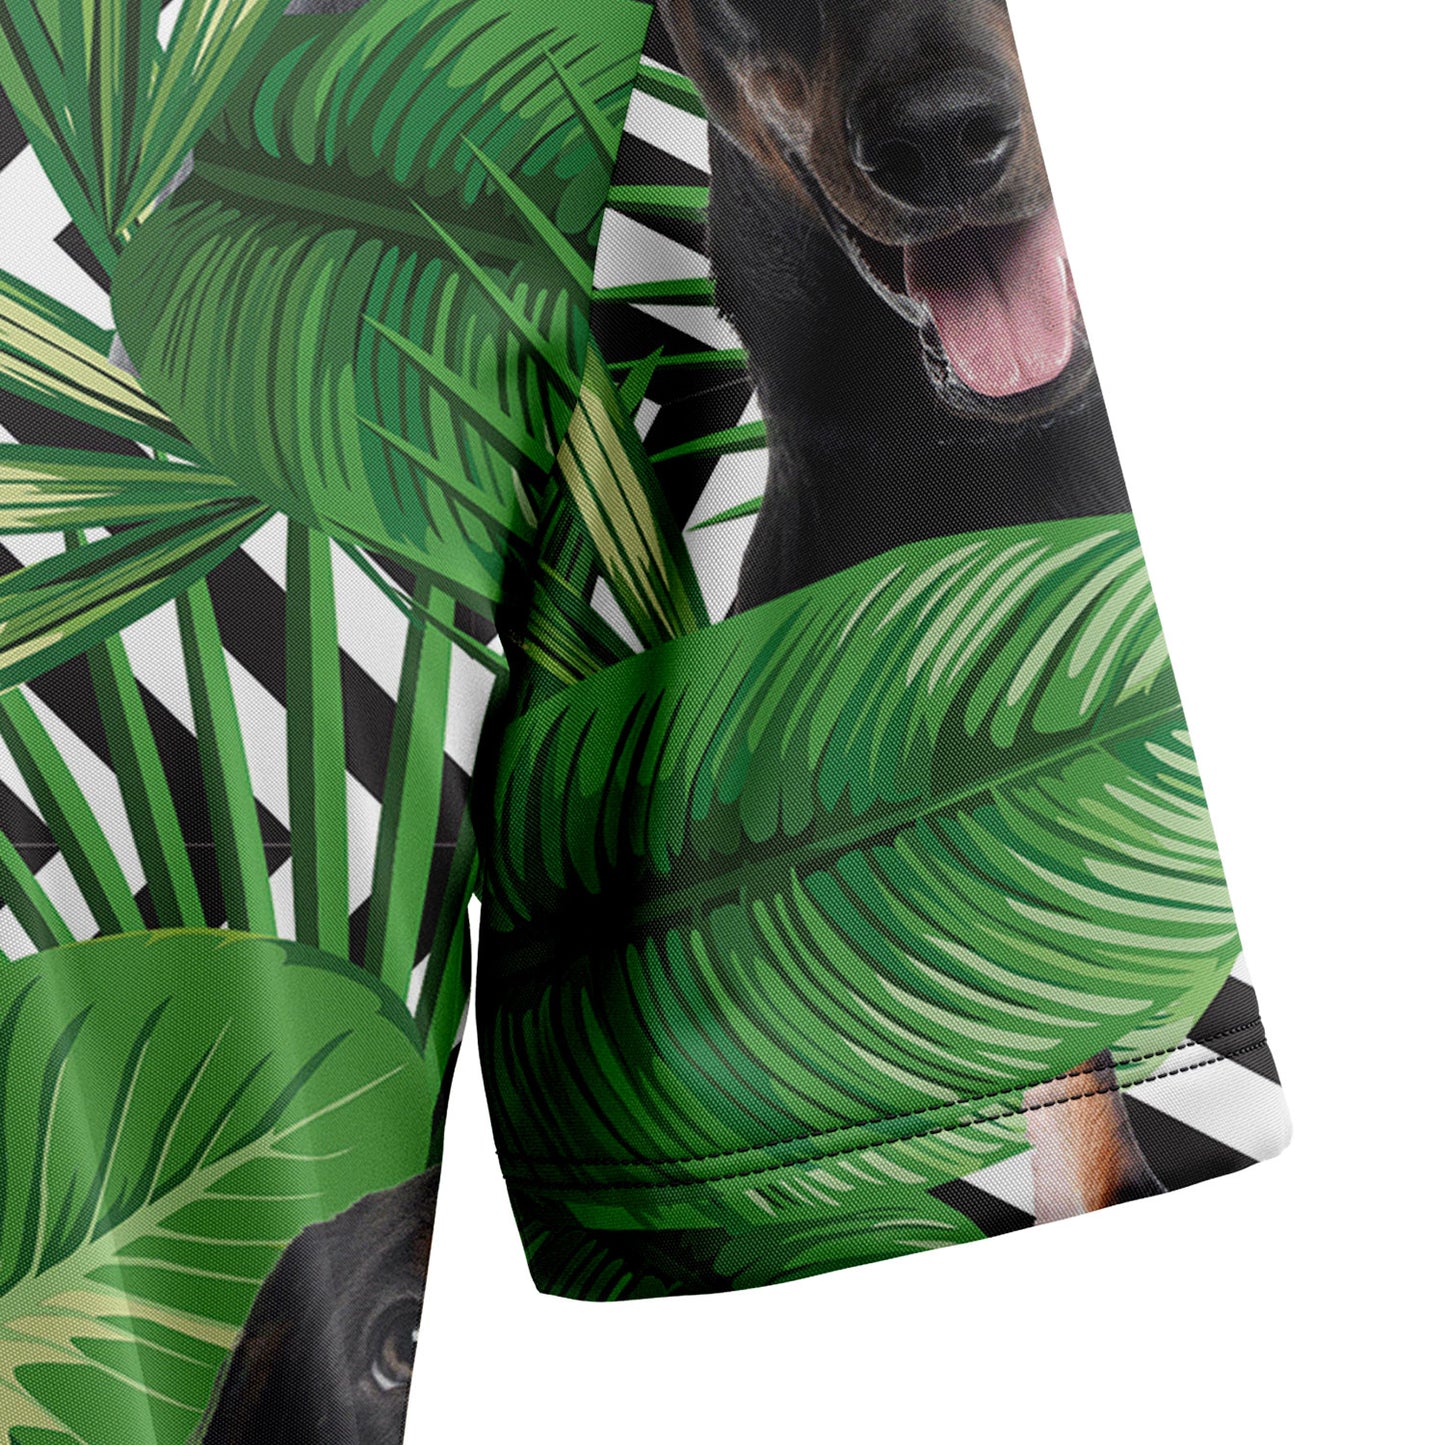 Summer Exotic Jungle Tropical Doberman Pinscher H97099 Hawaiian Shirt